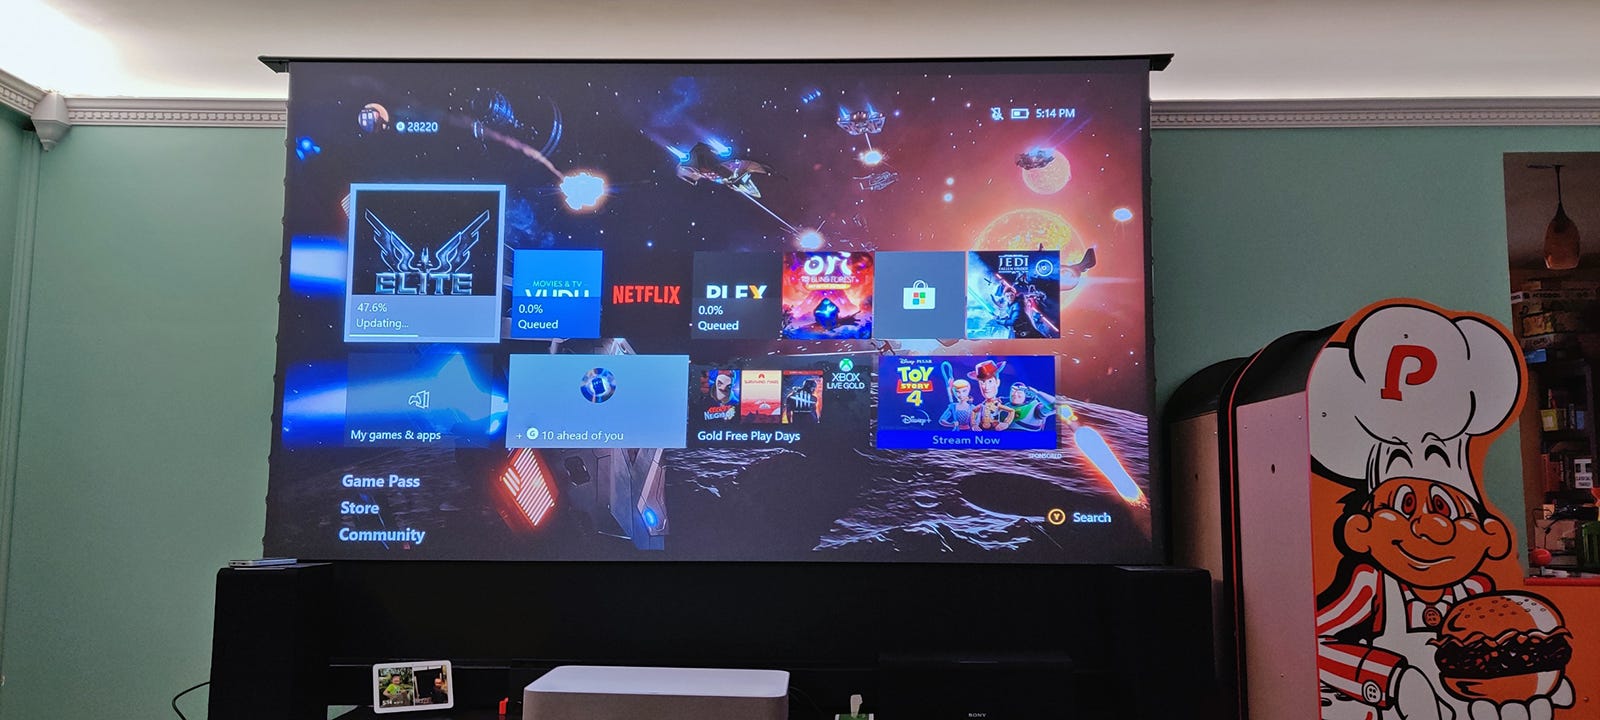 Một màn hình 100 inch khổng lồ hiển thị màn hình chính Xbox trong một căn phòng đủ ánh sáng.